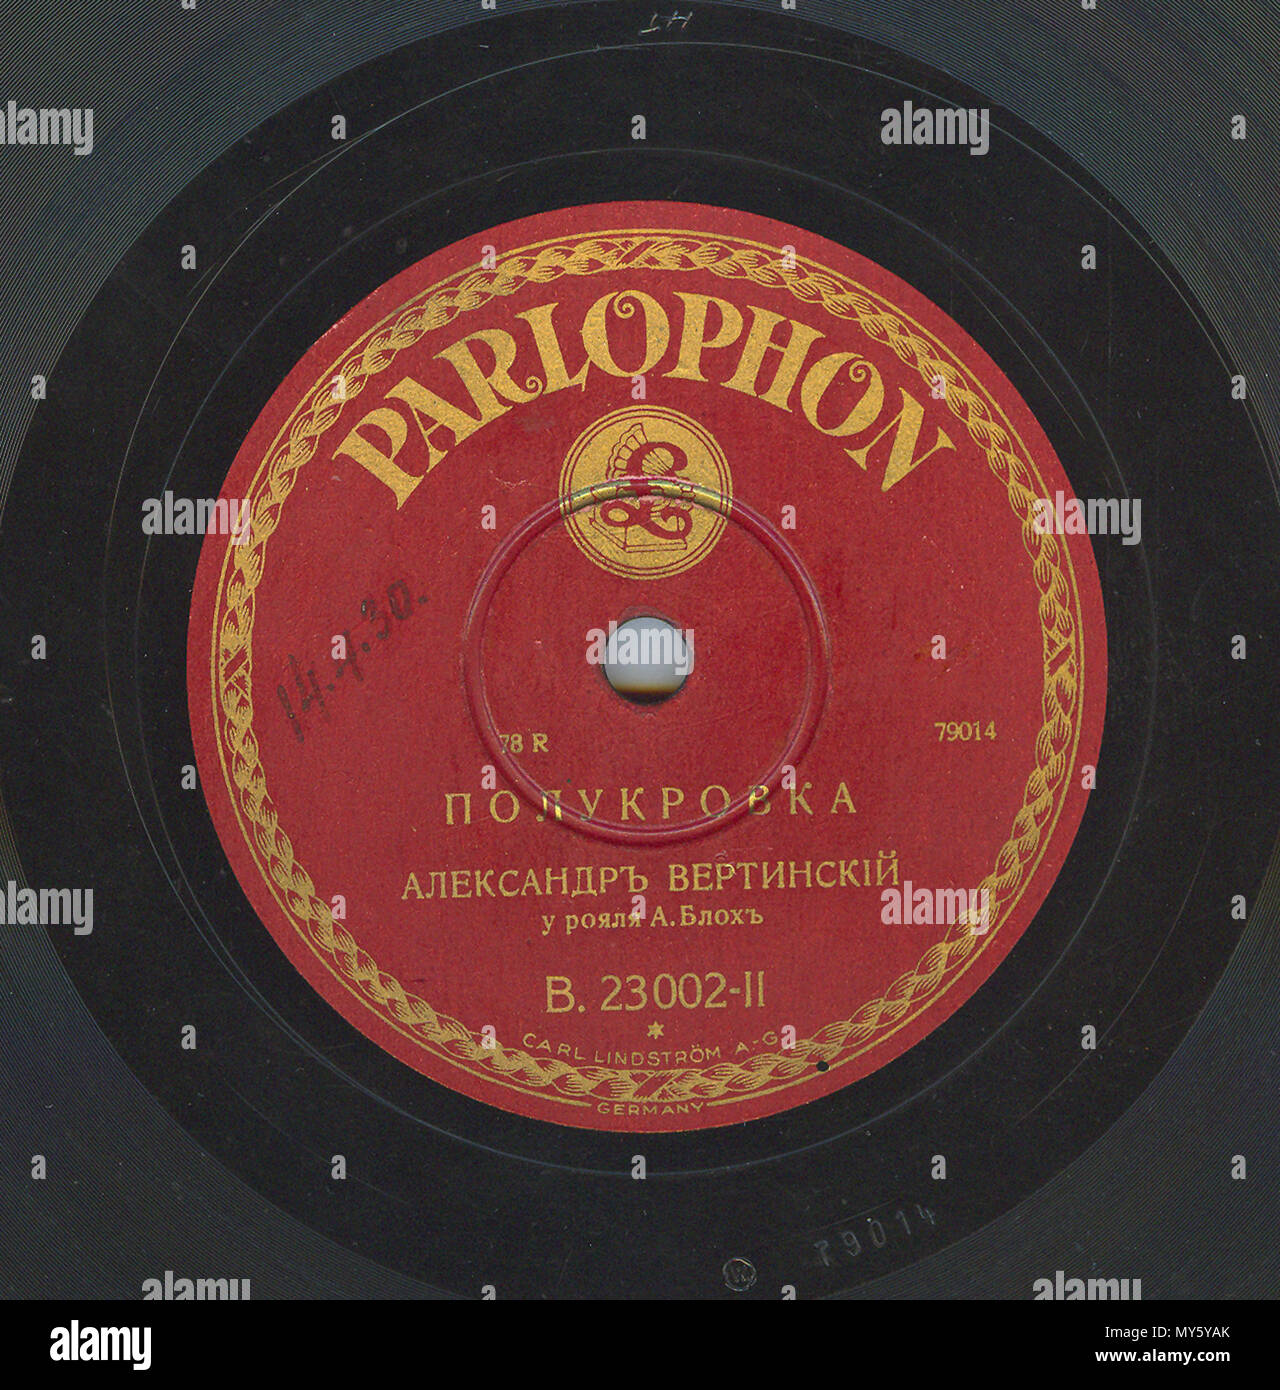 . Englisch: Vertinsky Parlophone B.23002 02. 6. April 2010, 12:08:43. Parlophone 548 Vertinsky Parlophone B.23002, 02. Stockfoto